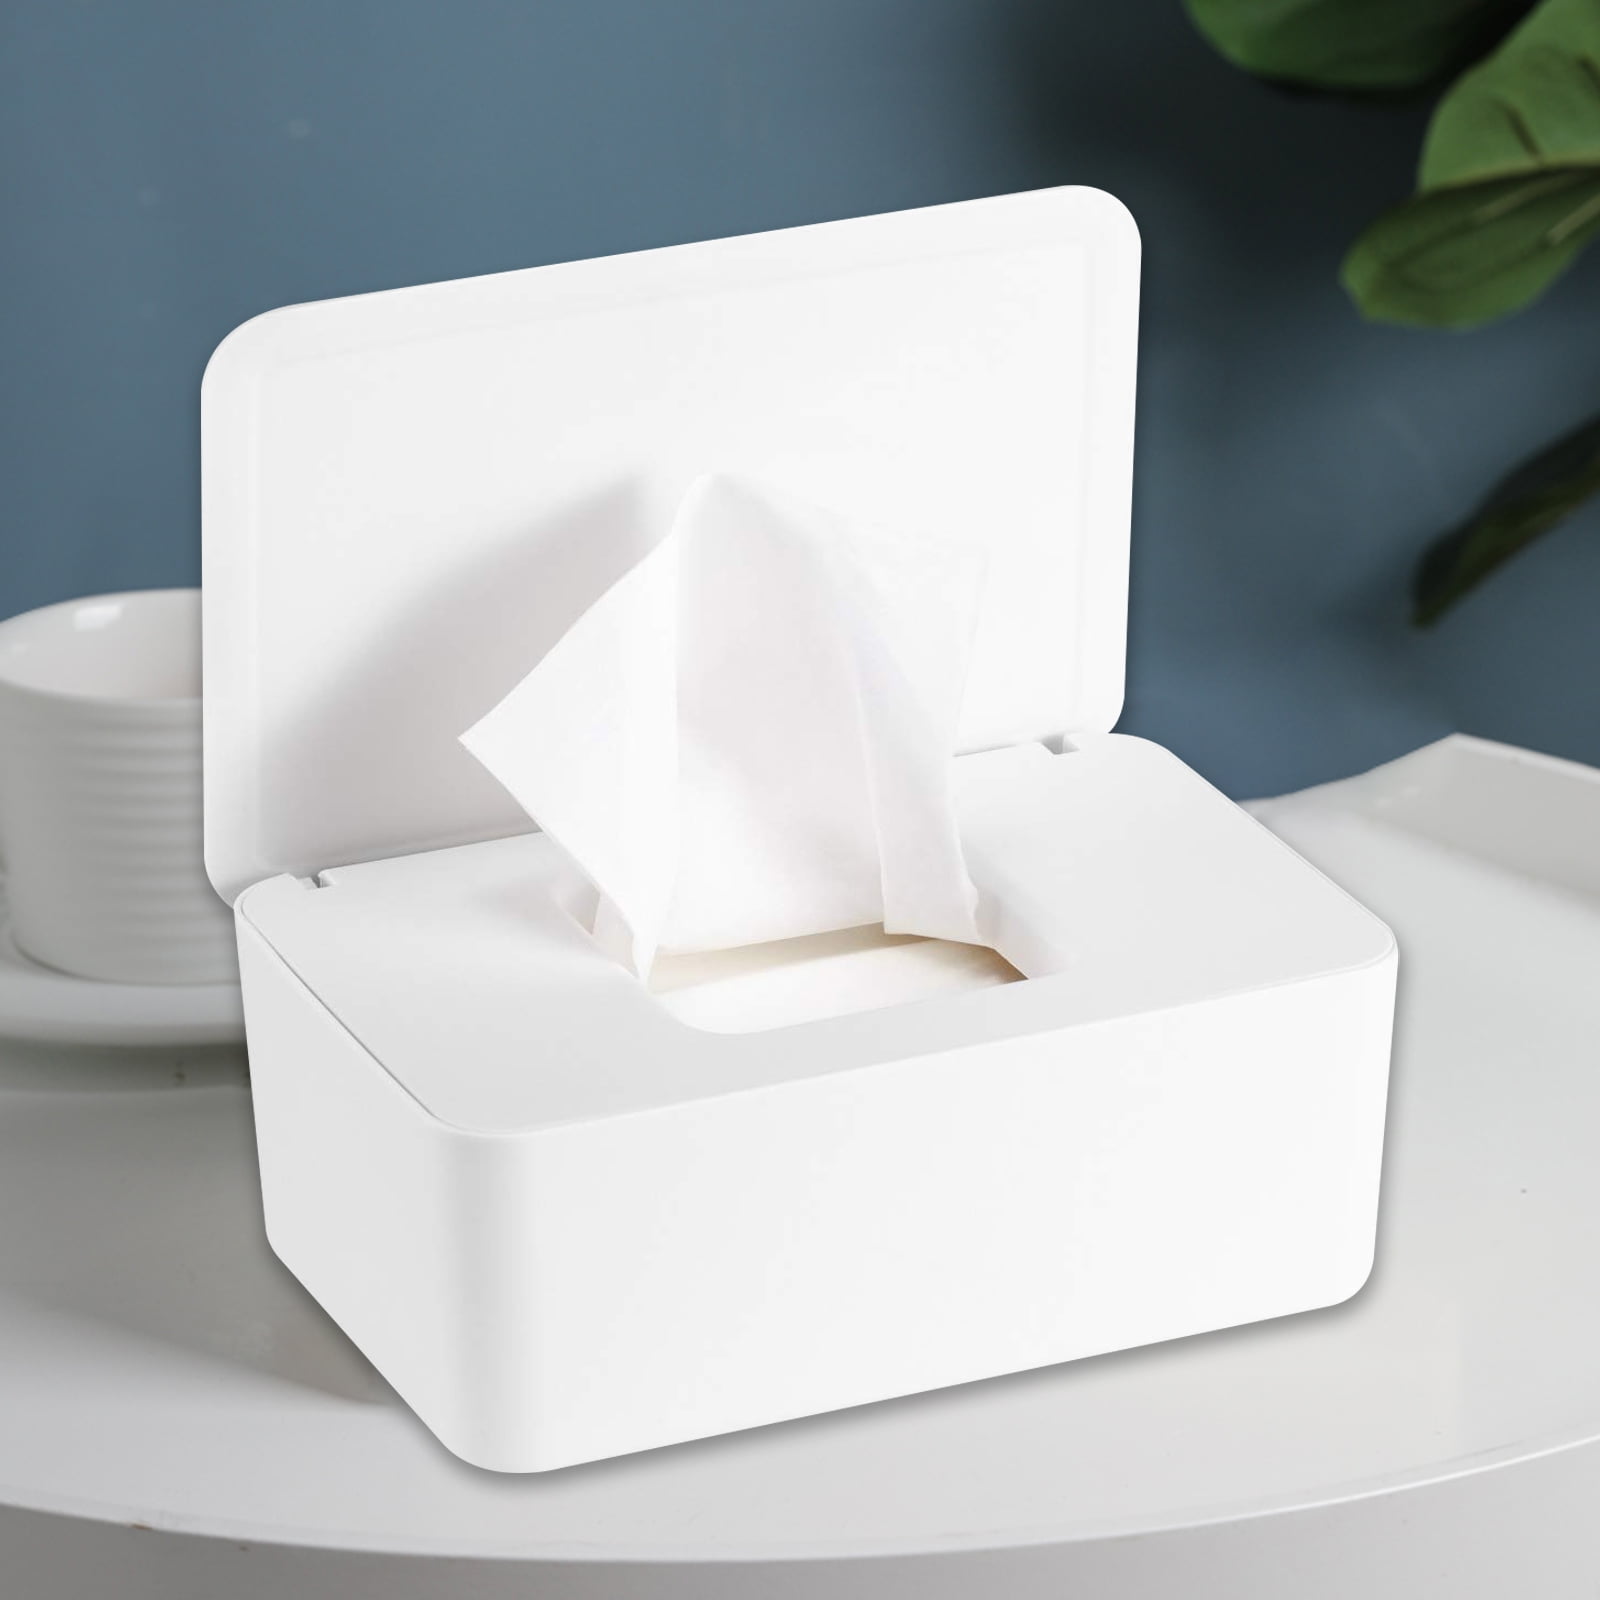 Baby Wipes Dispenser Tissue Napkin Storage Box Dustproof Container Case Holder 